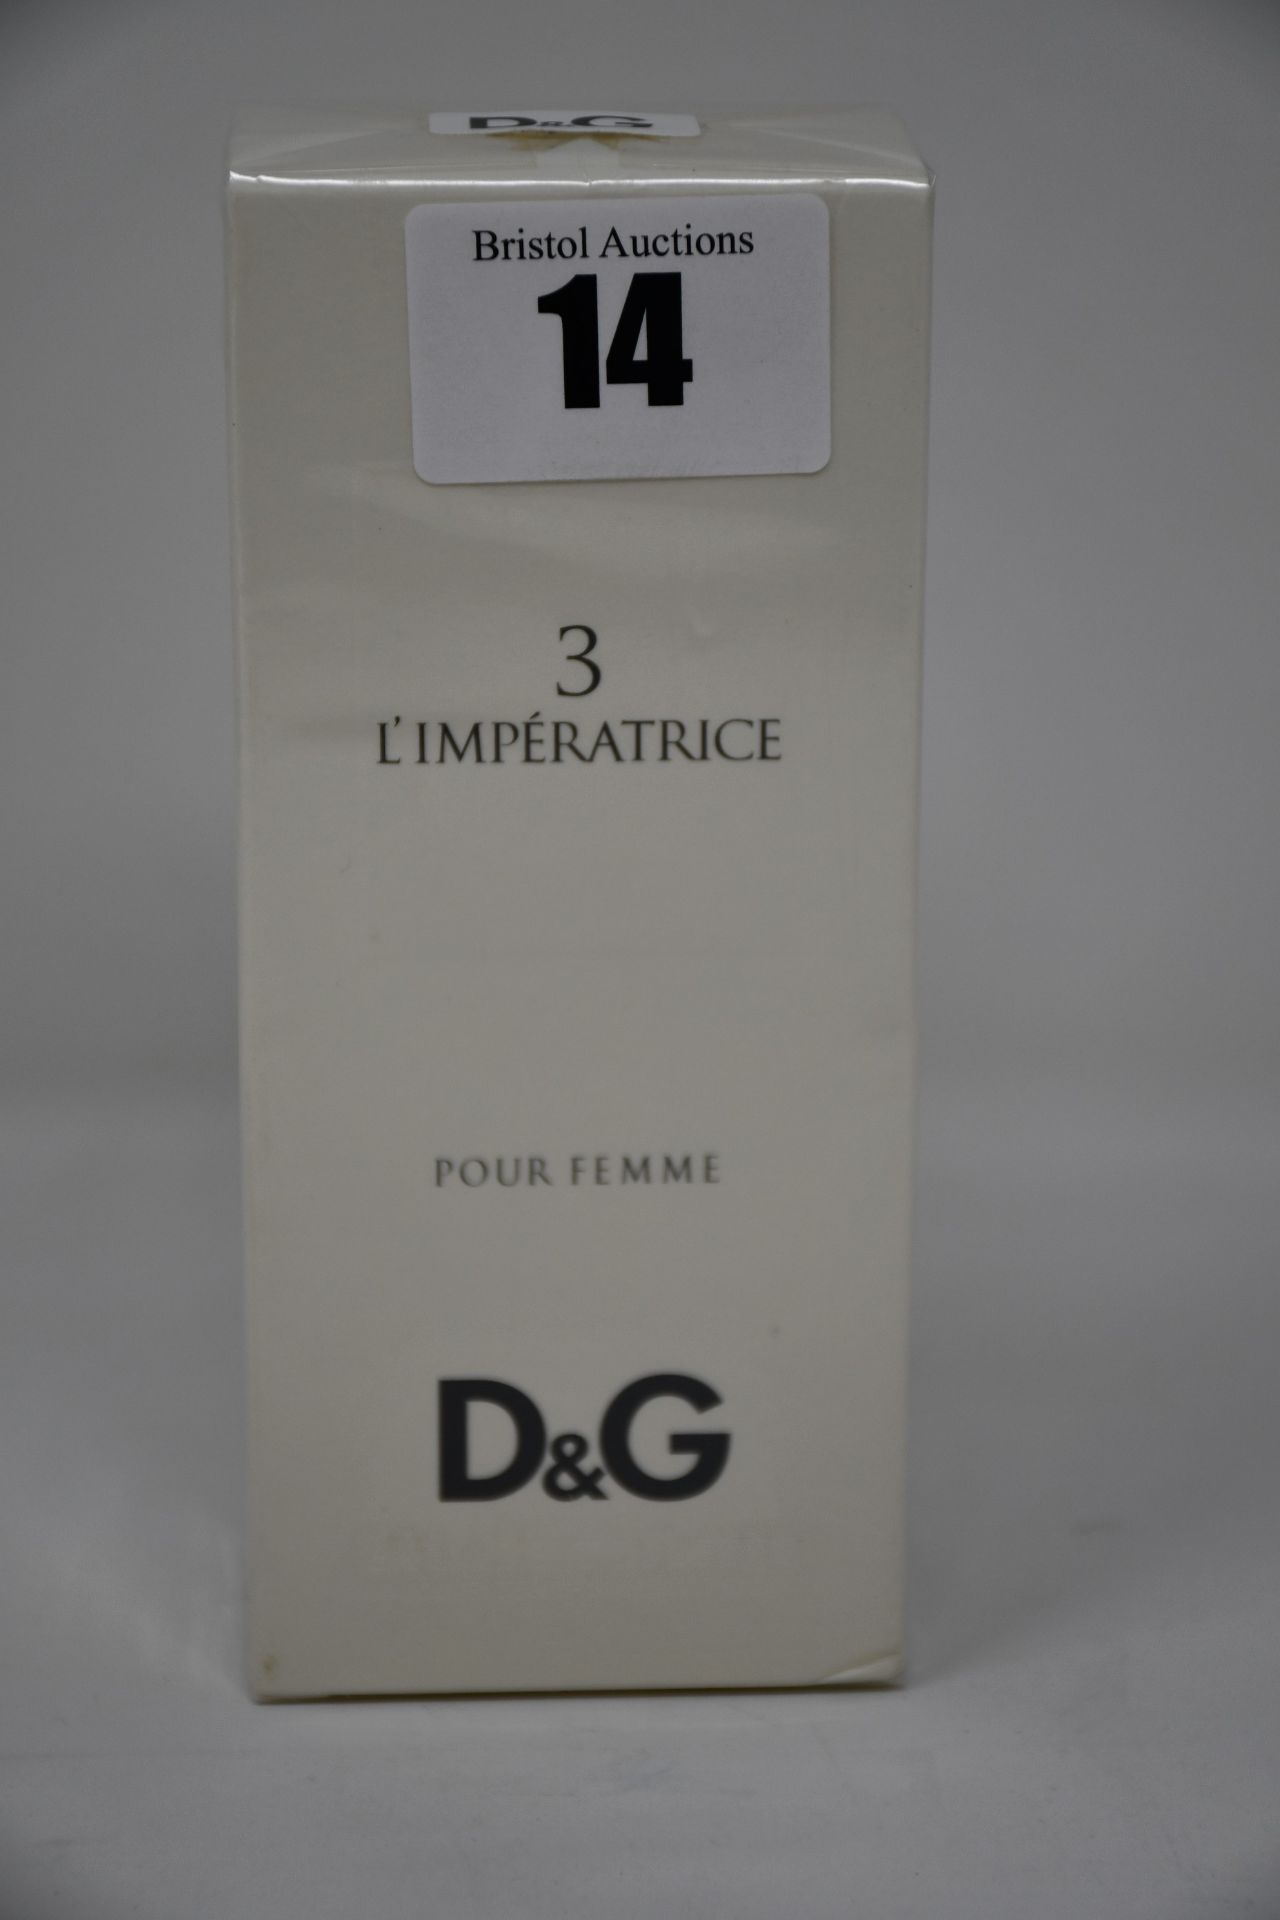 Four Dolce&Gabbana 3 l'imperatrice eau de toilette (100ml).